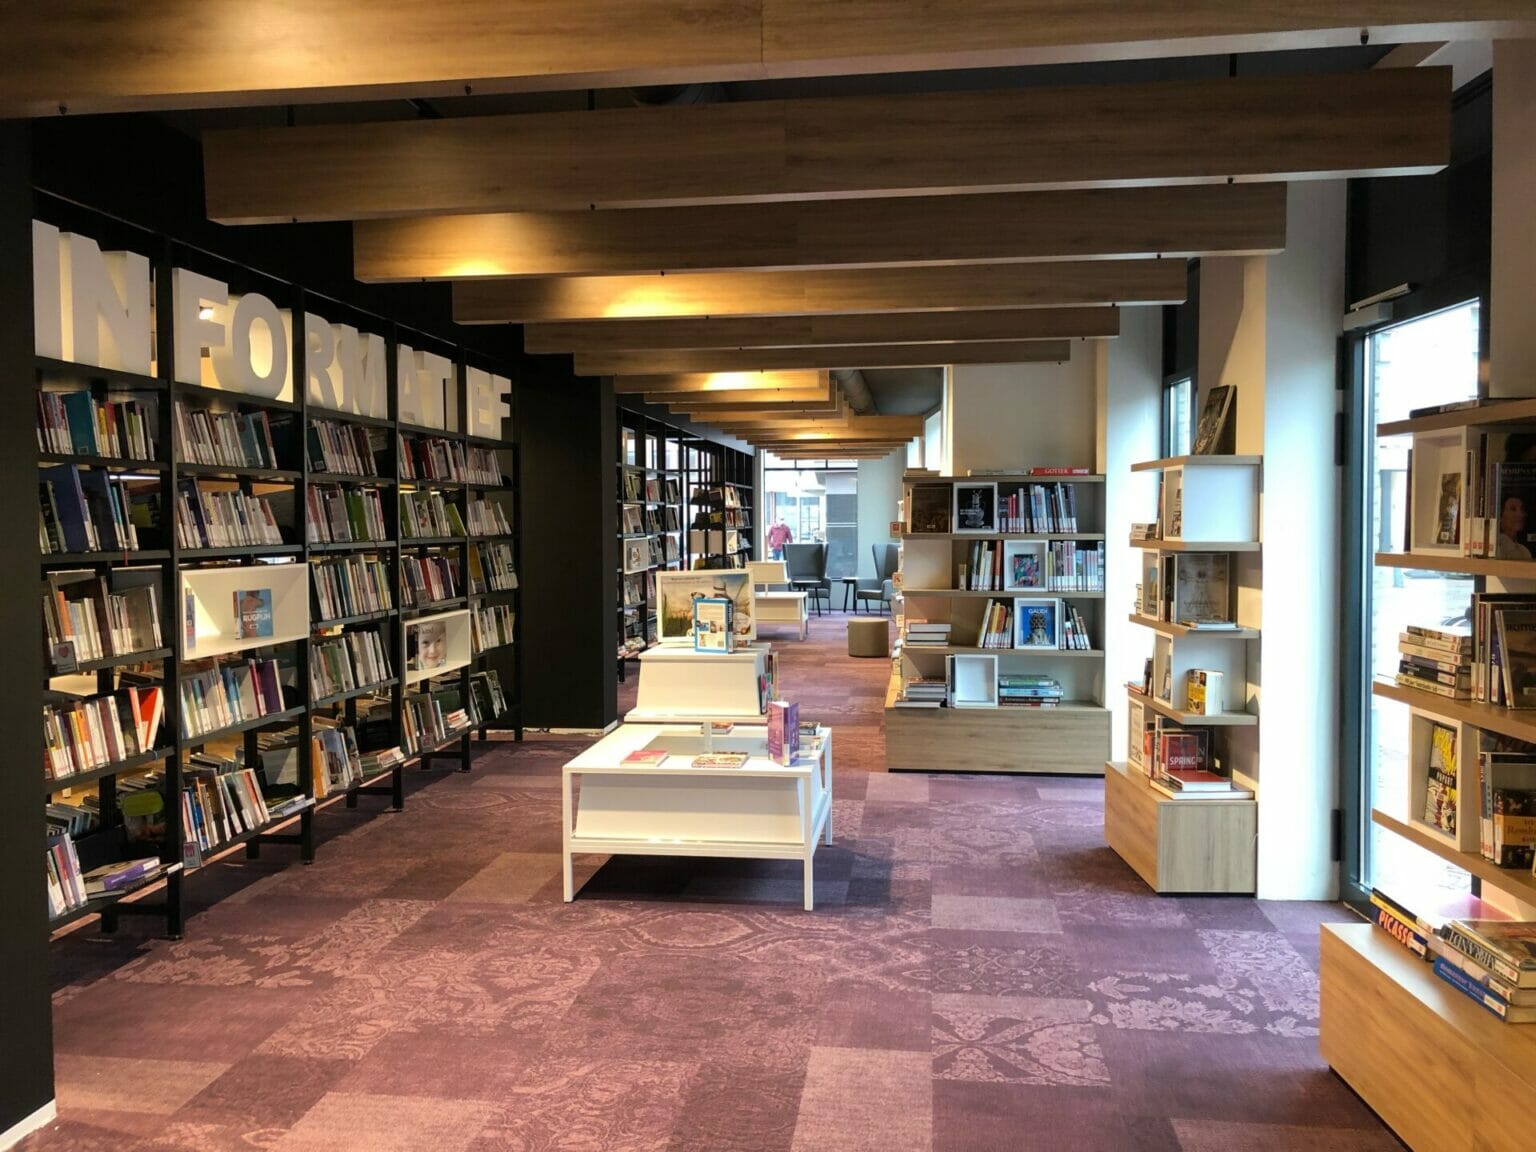 Bibliotheek zeeuws vlaanderen zwarte stalen stelling kast en eiken boekenkast